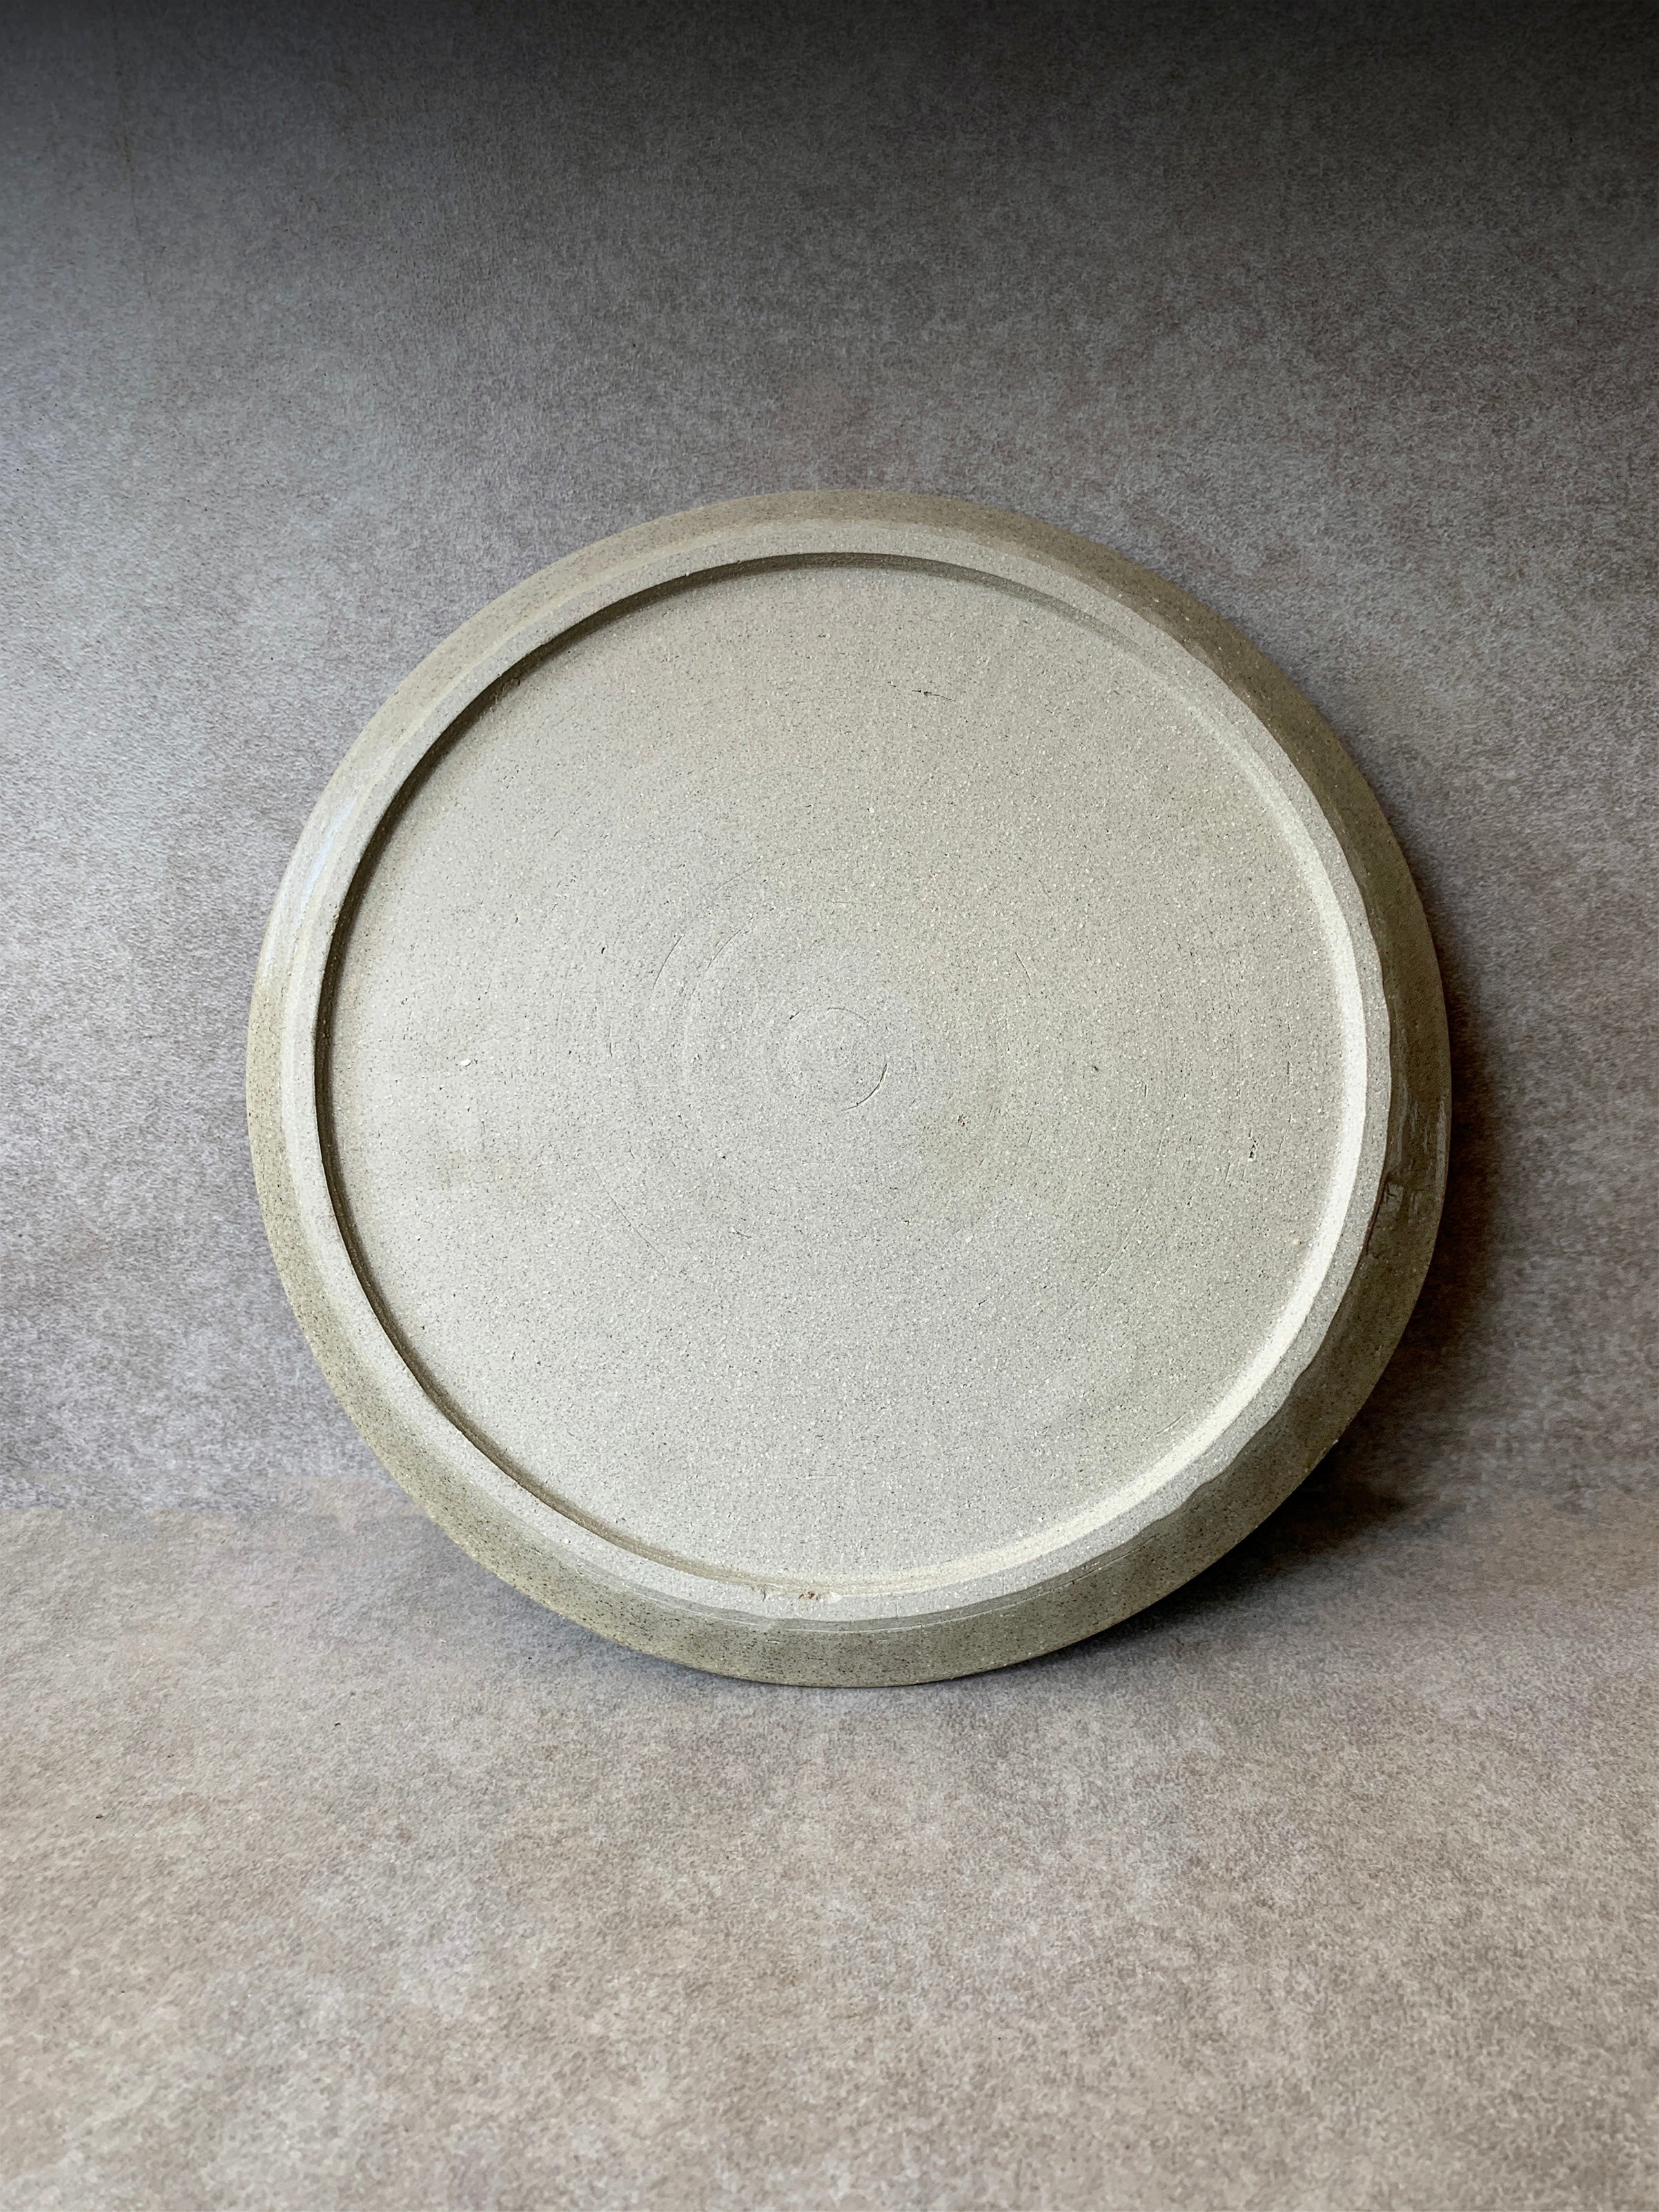 Medium Flame Plate - 23cm diameter